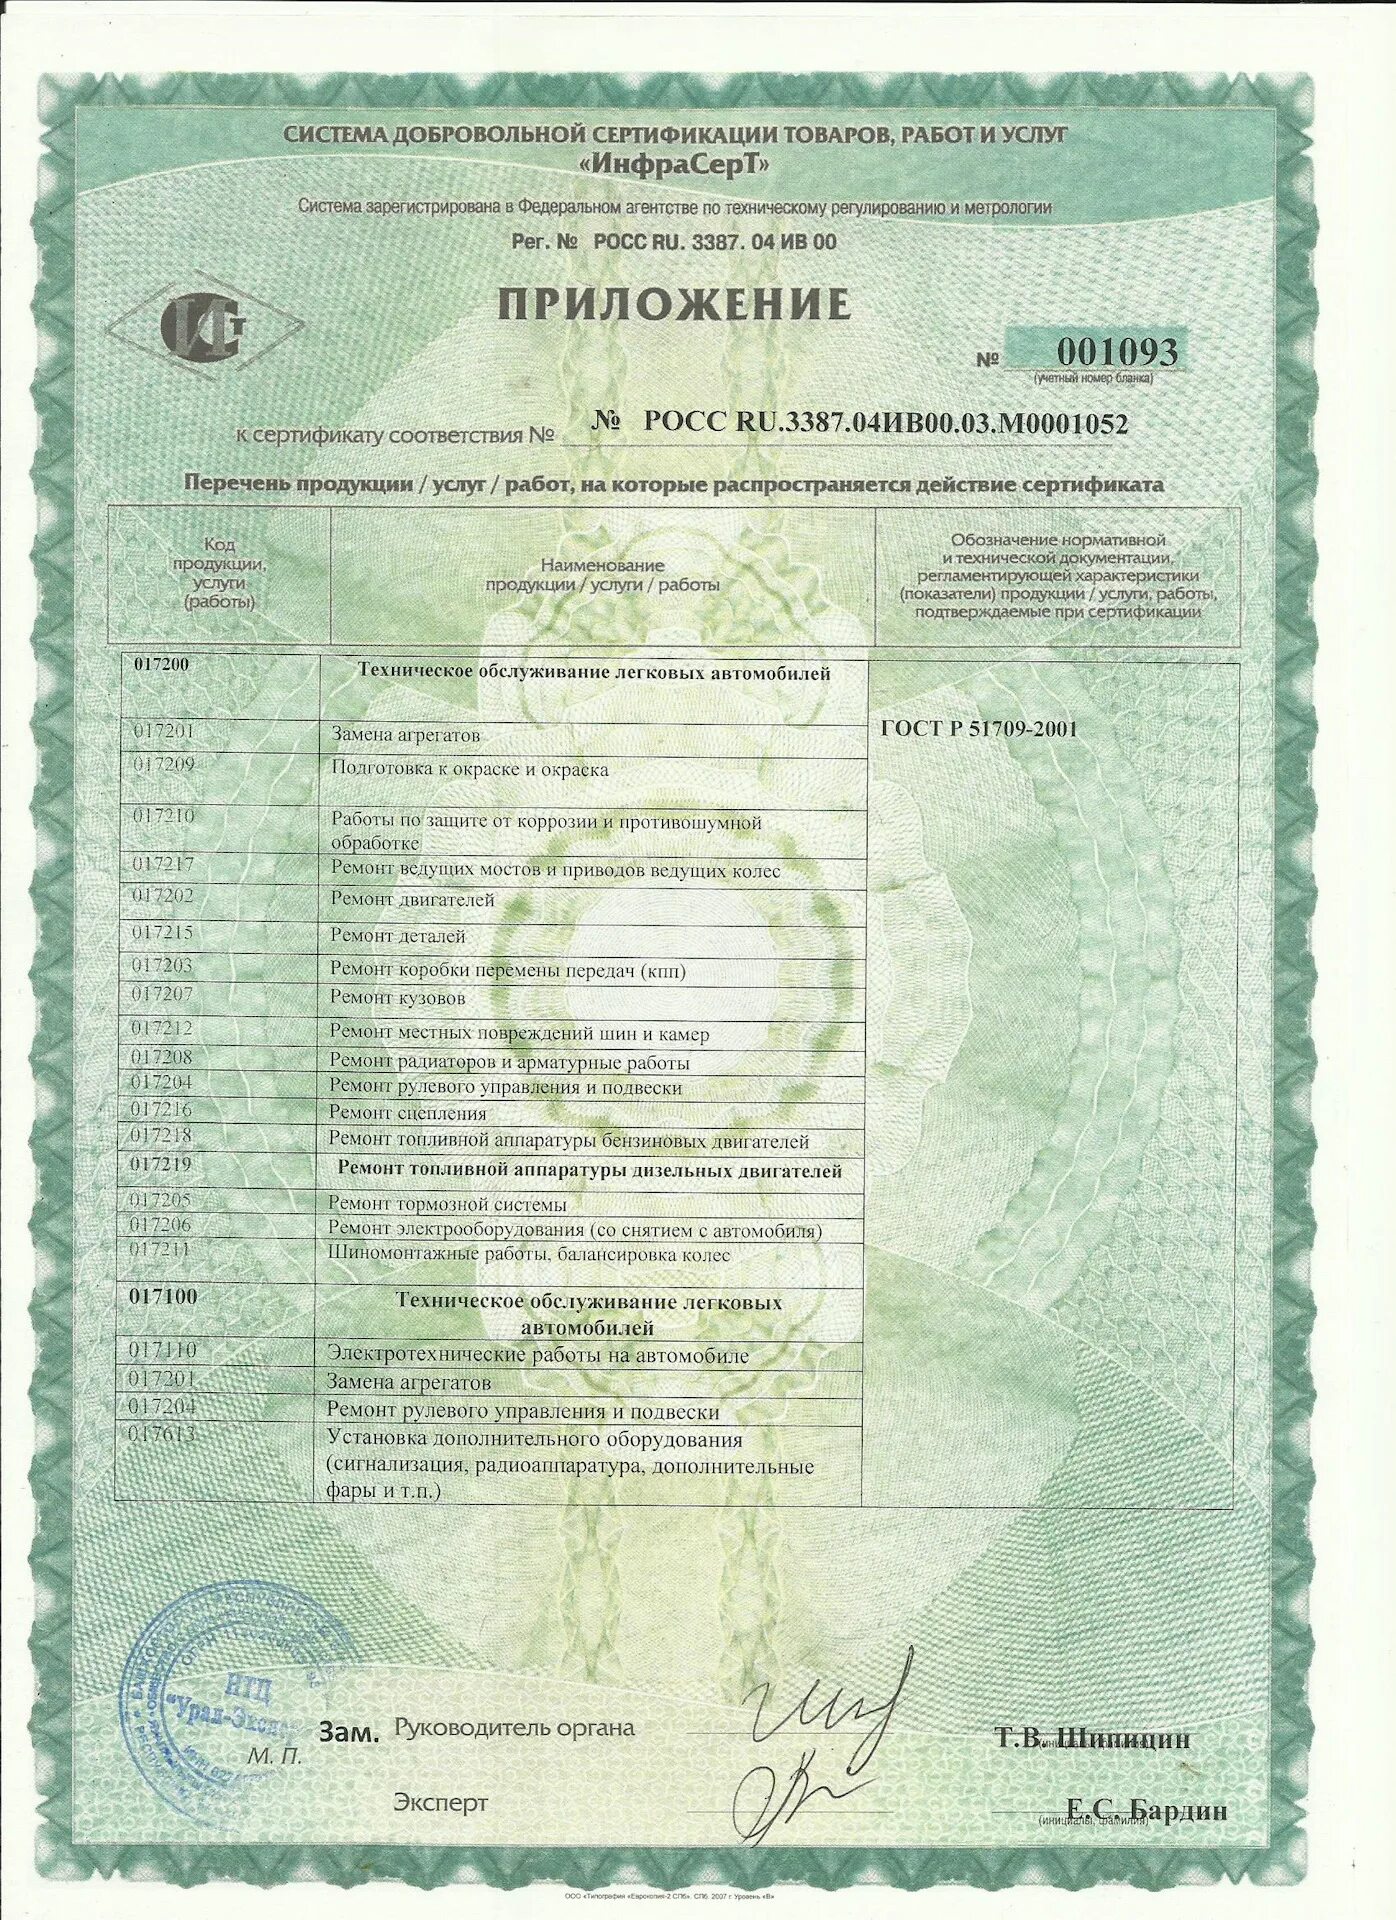 Сертификат на переоборудование транспортных средств. Сертификат на грузовых автомобиля. Сертификат о переоборудовании ТС. Сертификат Росс ru.3387.04ив00.